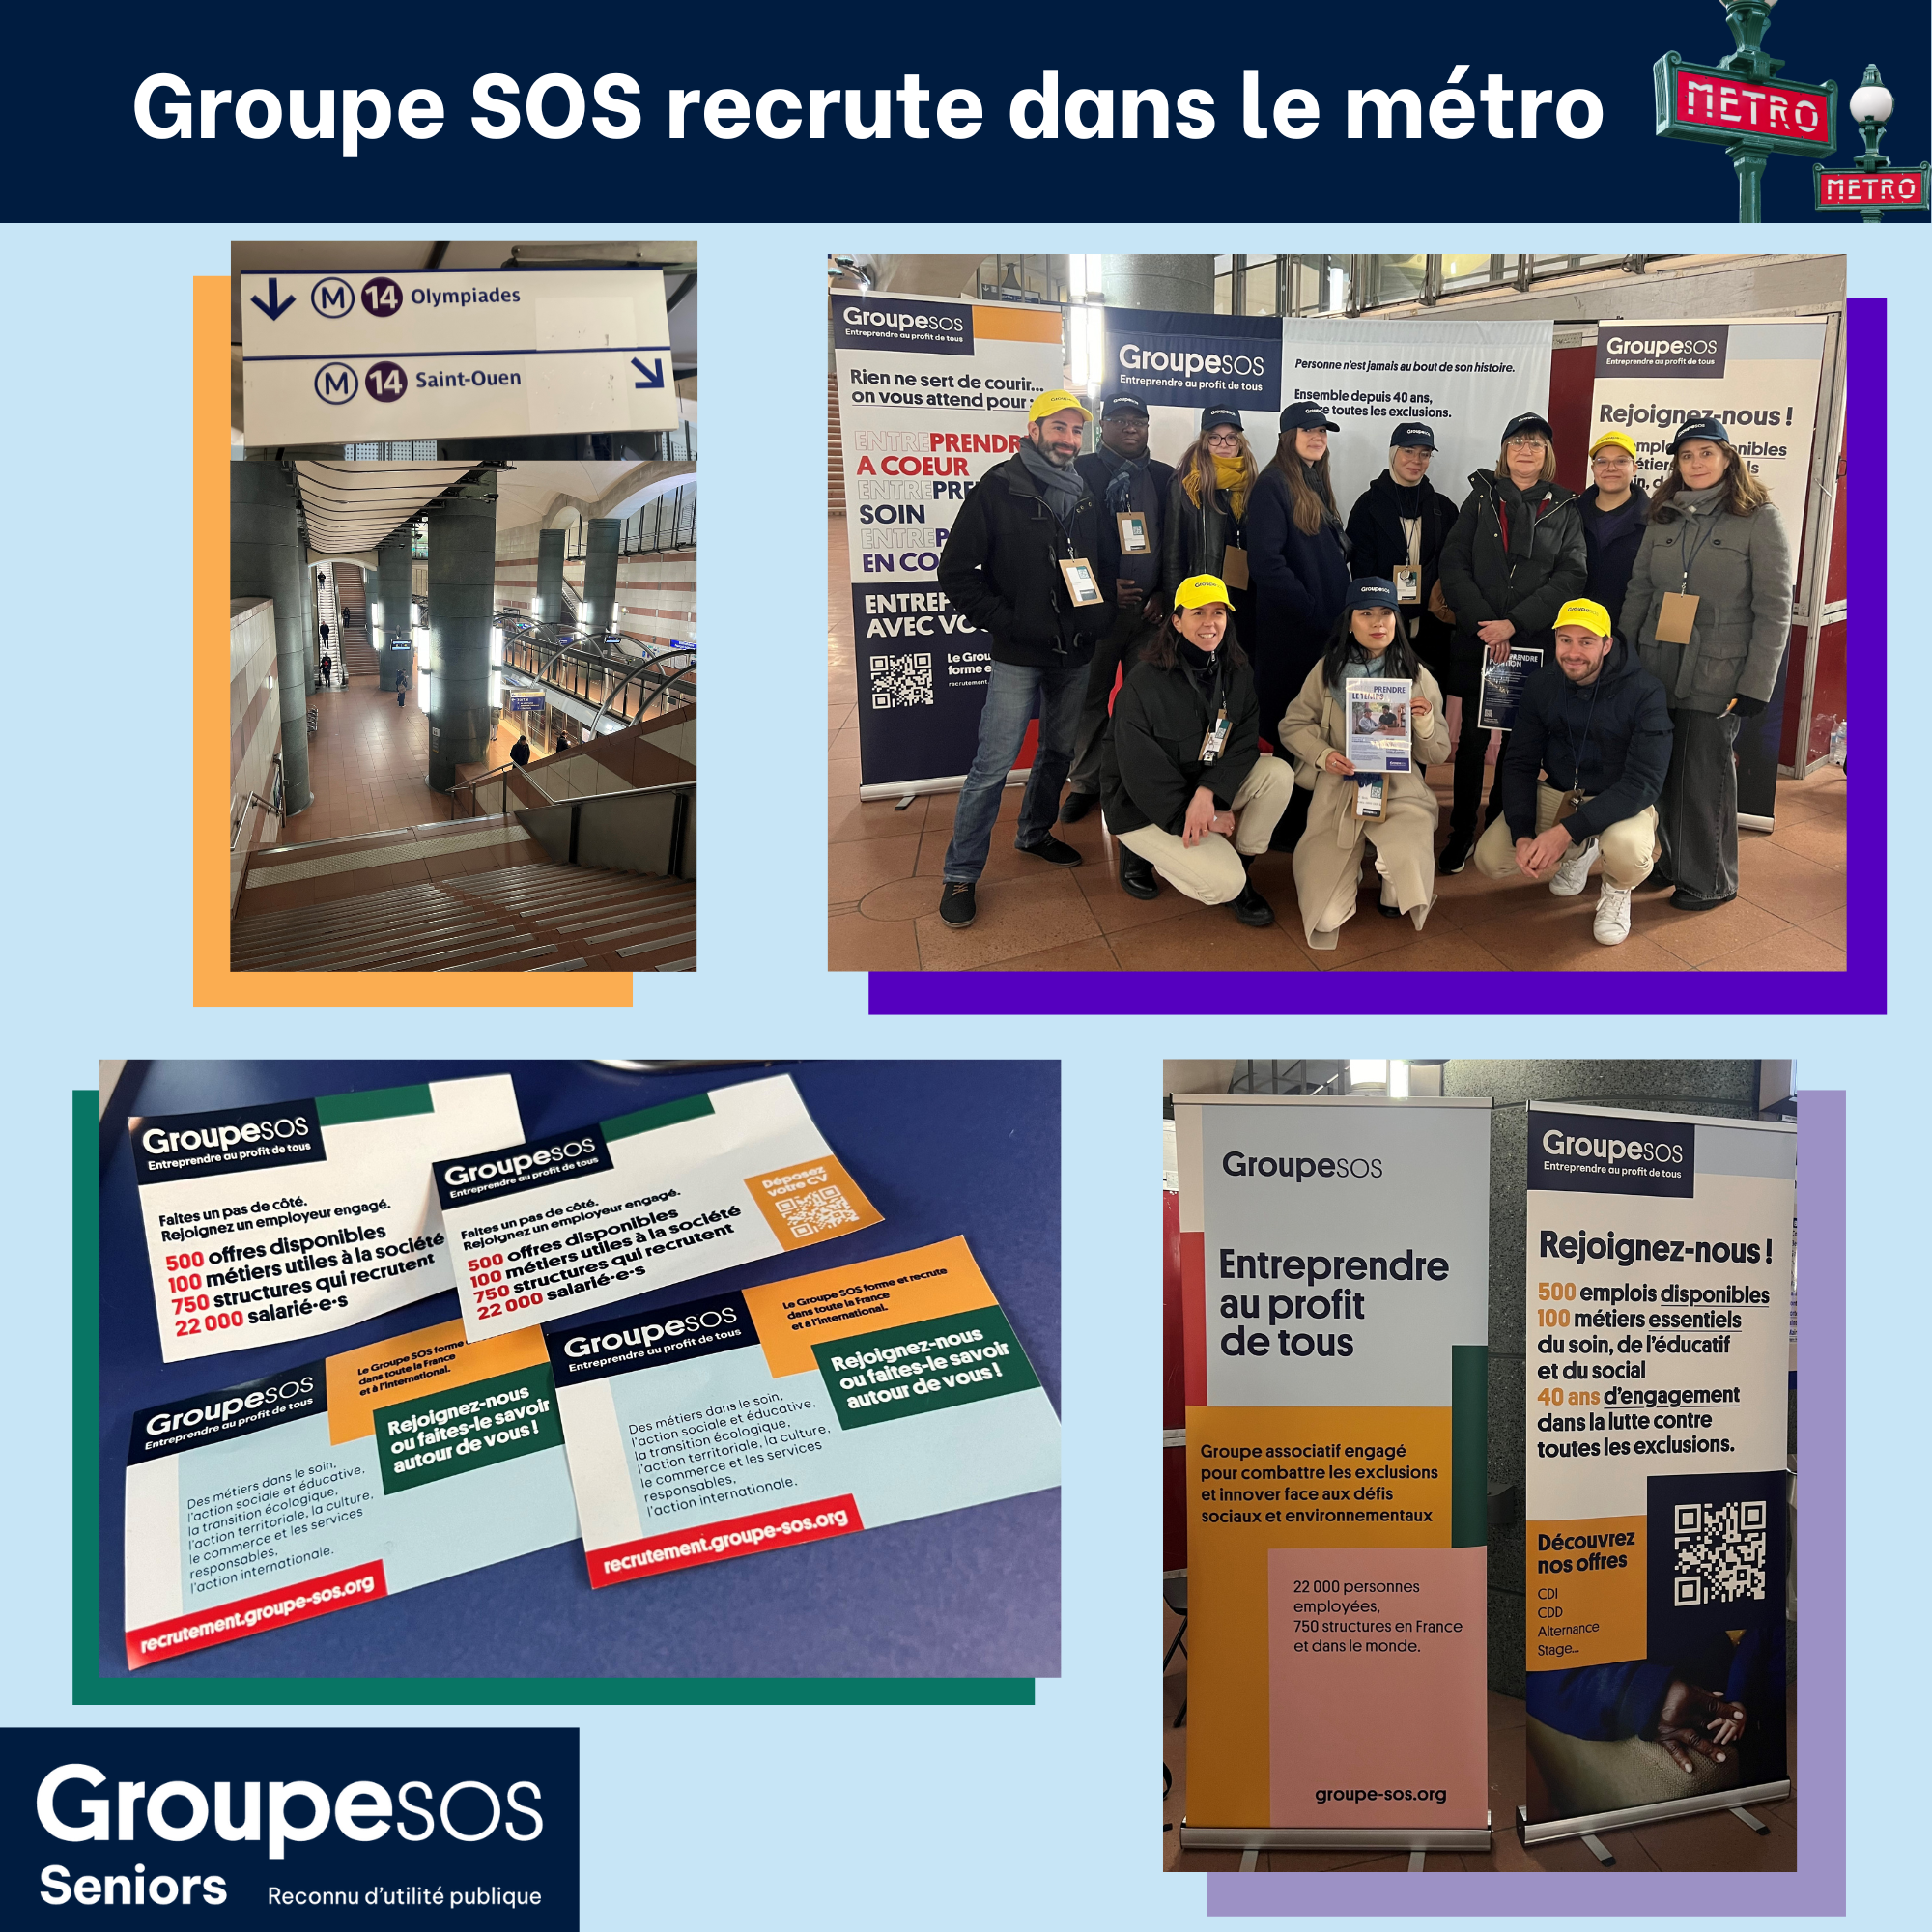 Groupe SOS recrute dans le métro